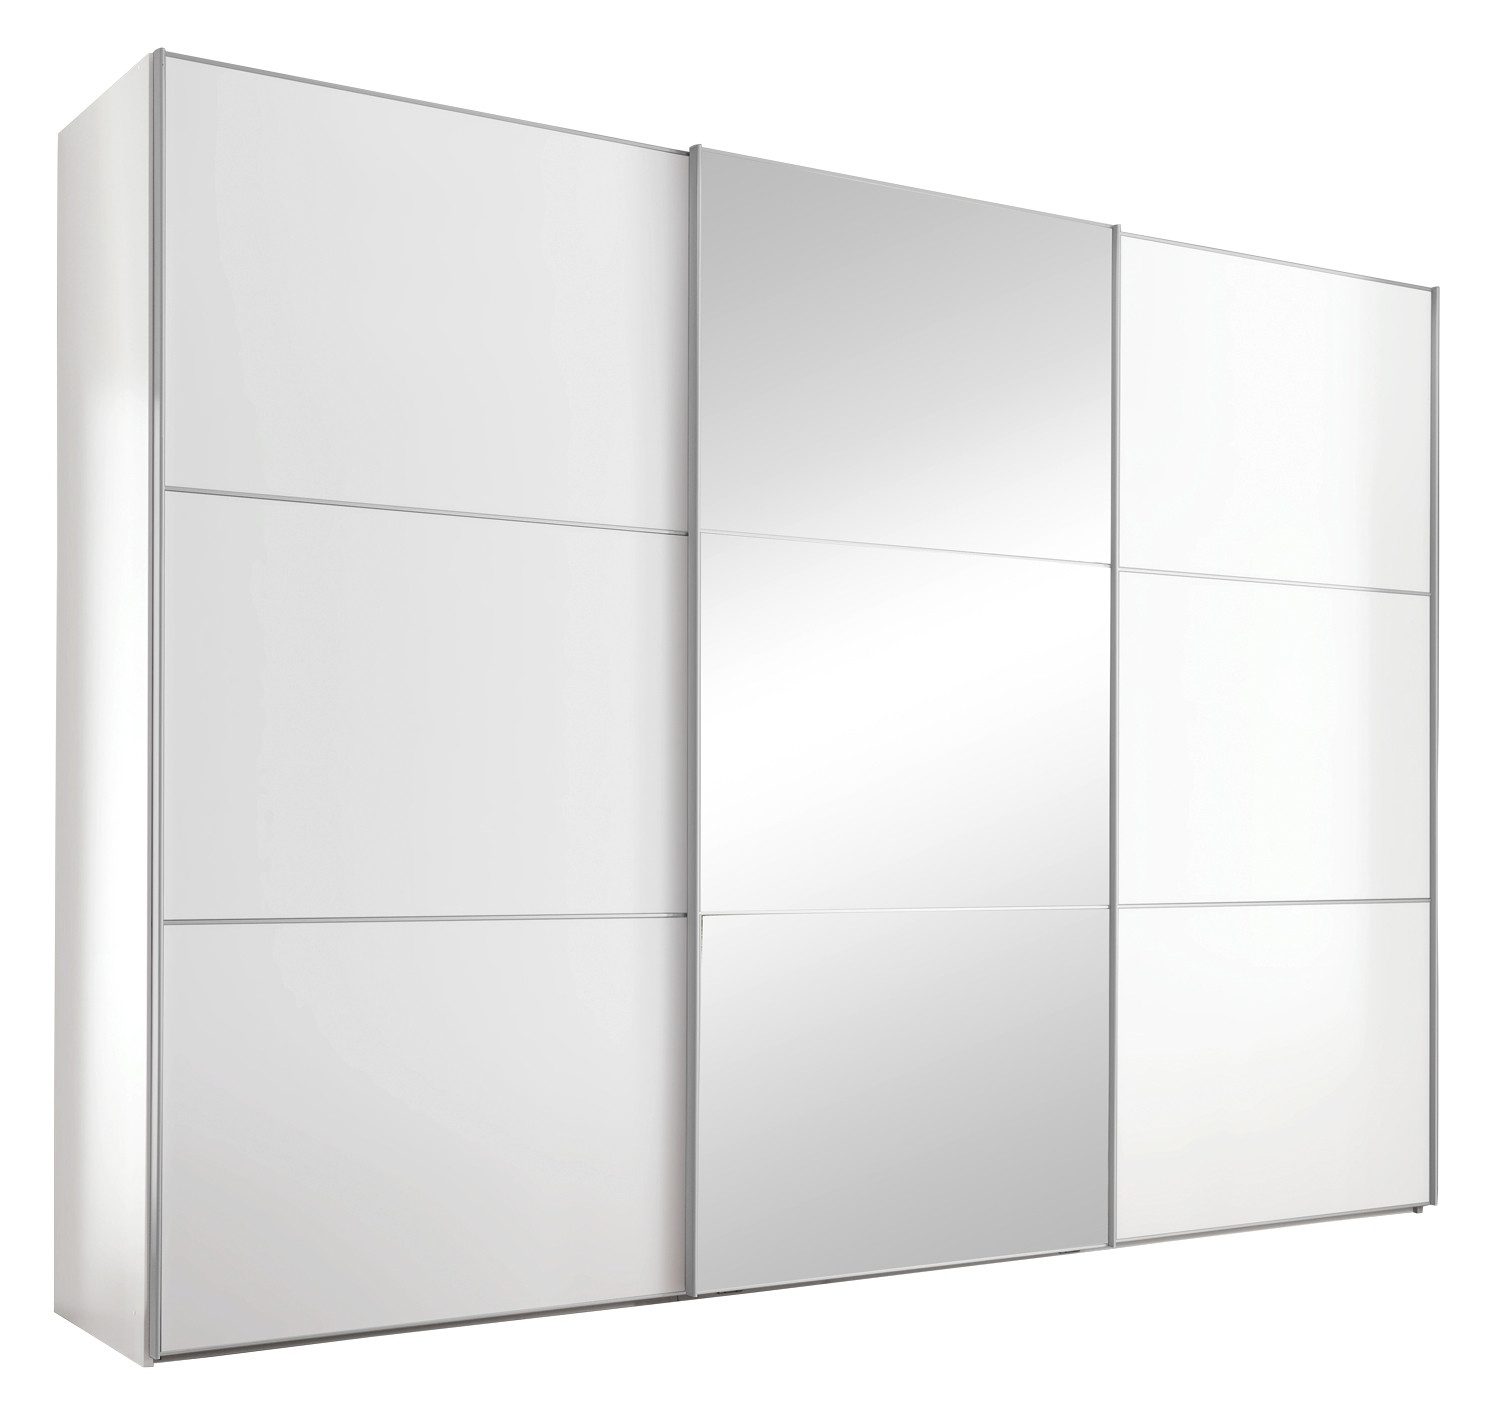 STAUD Schwebetürenschrank LENTO, 3-türig, Weiß matt, mit Spiegel, Türdämpfer 2 Schubladen, B 249 x H 222 x T 68 cm